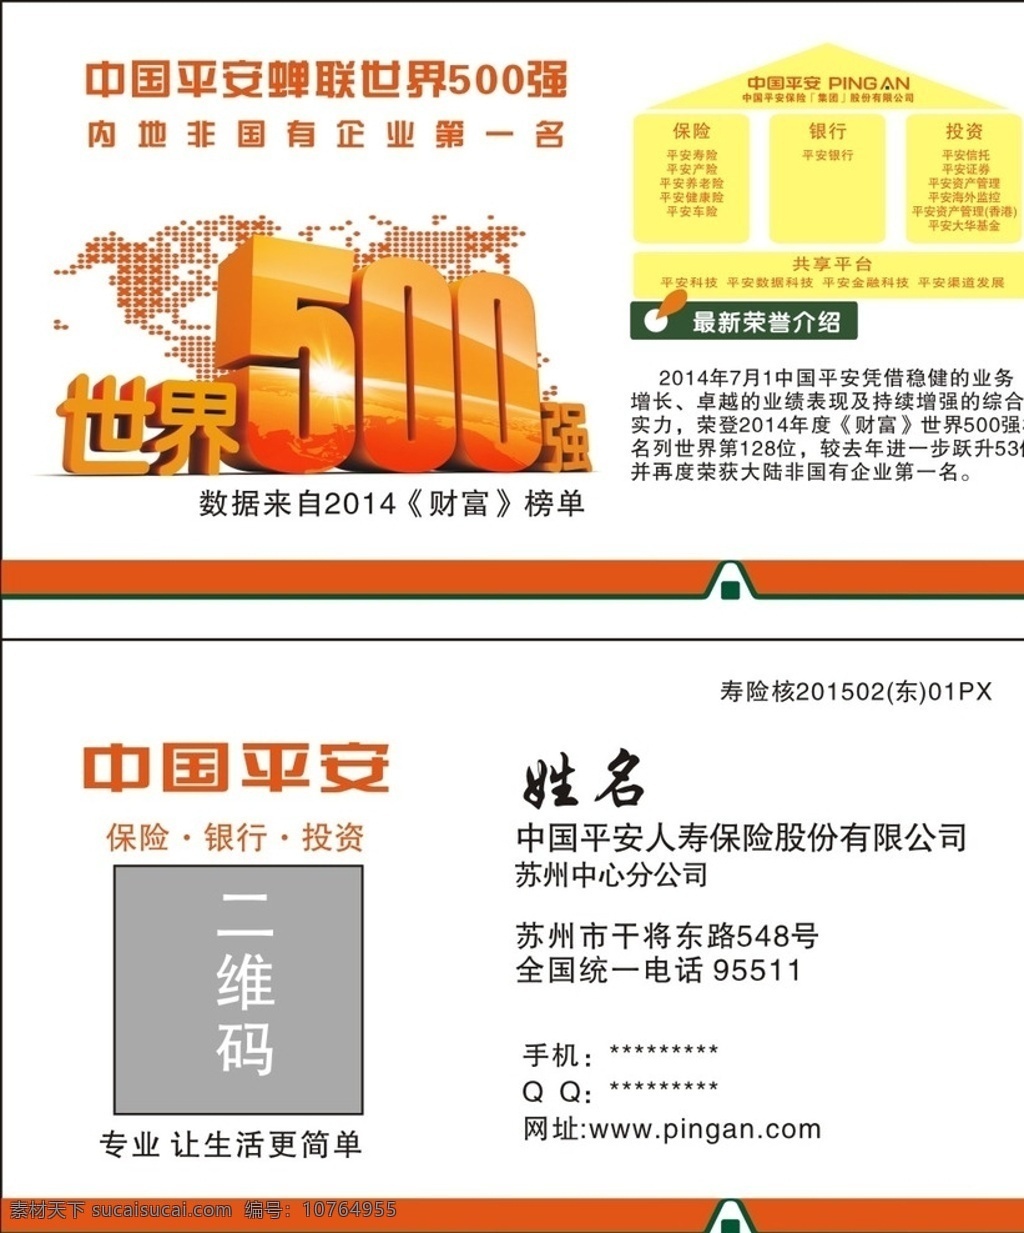 中国平安名片 中国平安 平安保险 名片 500强 保险 名片卡片